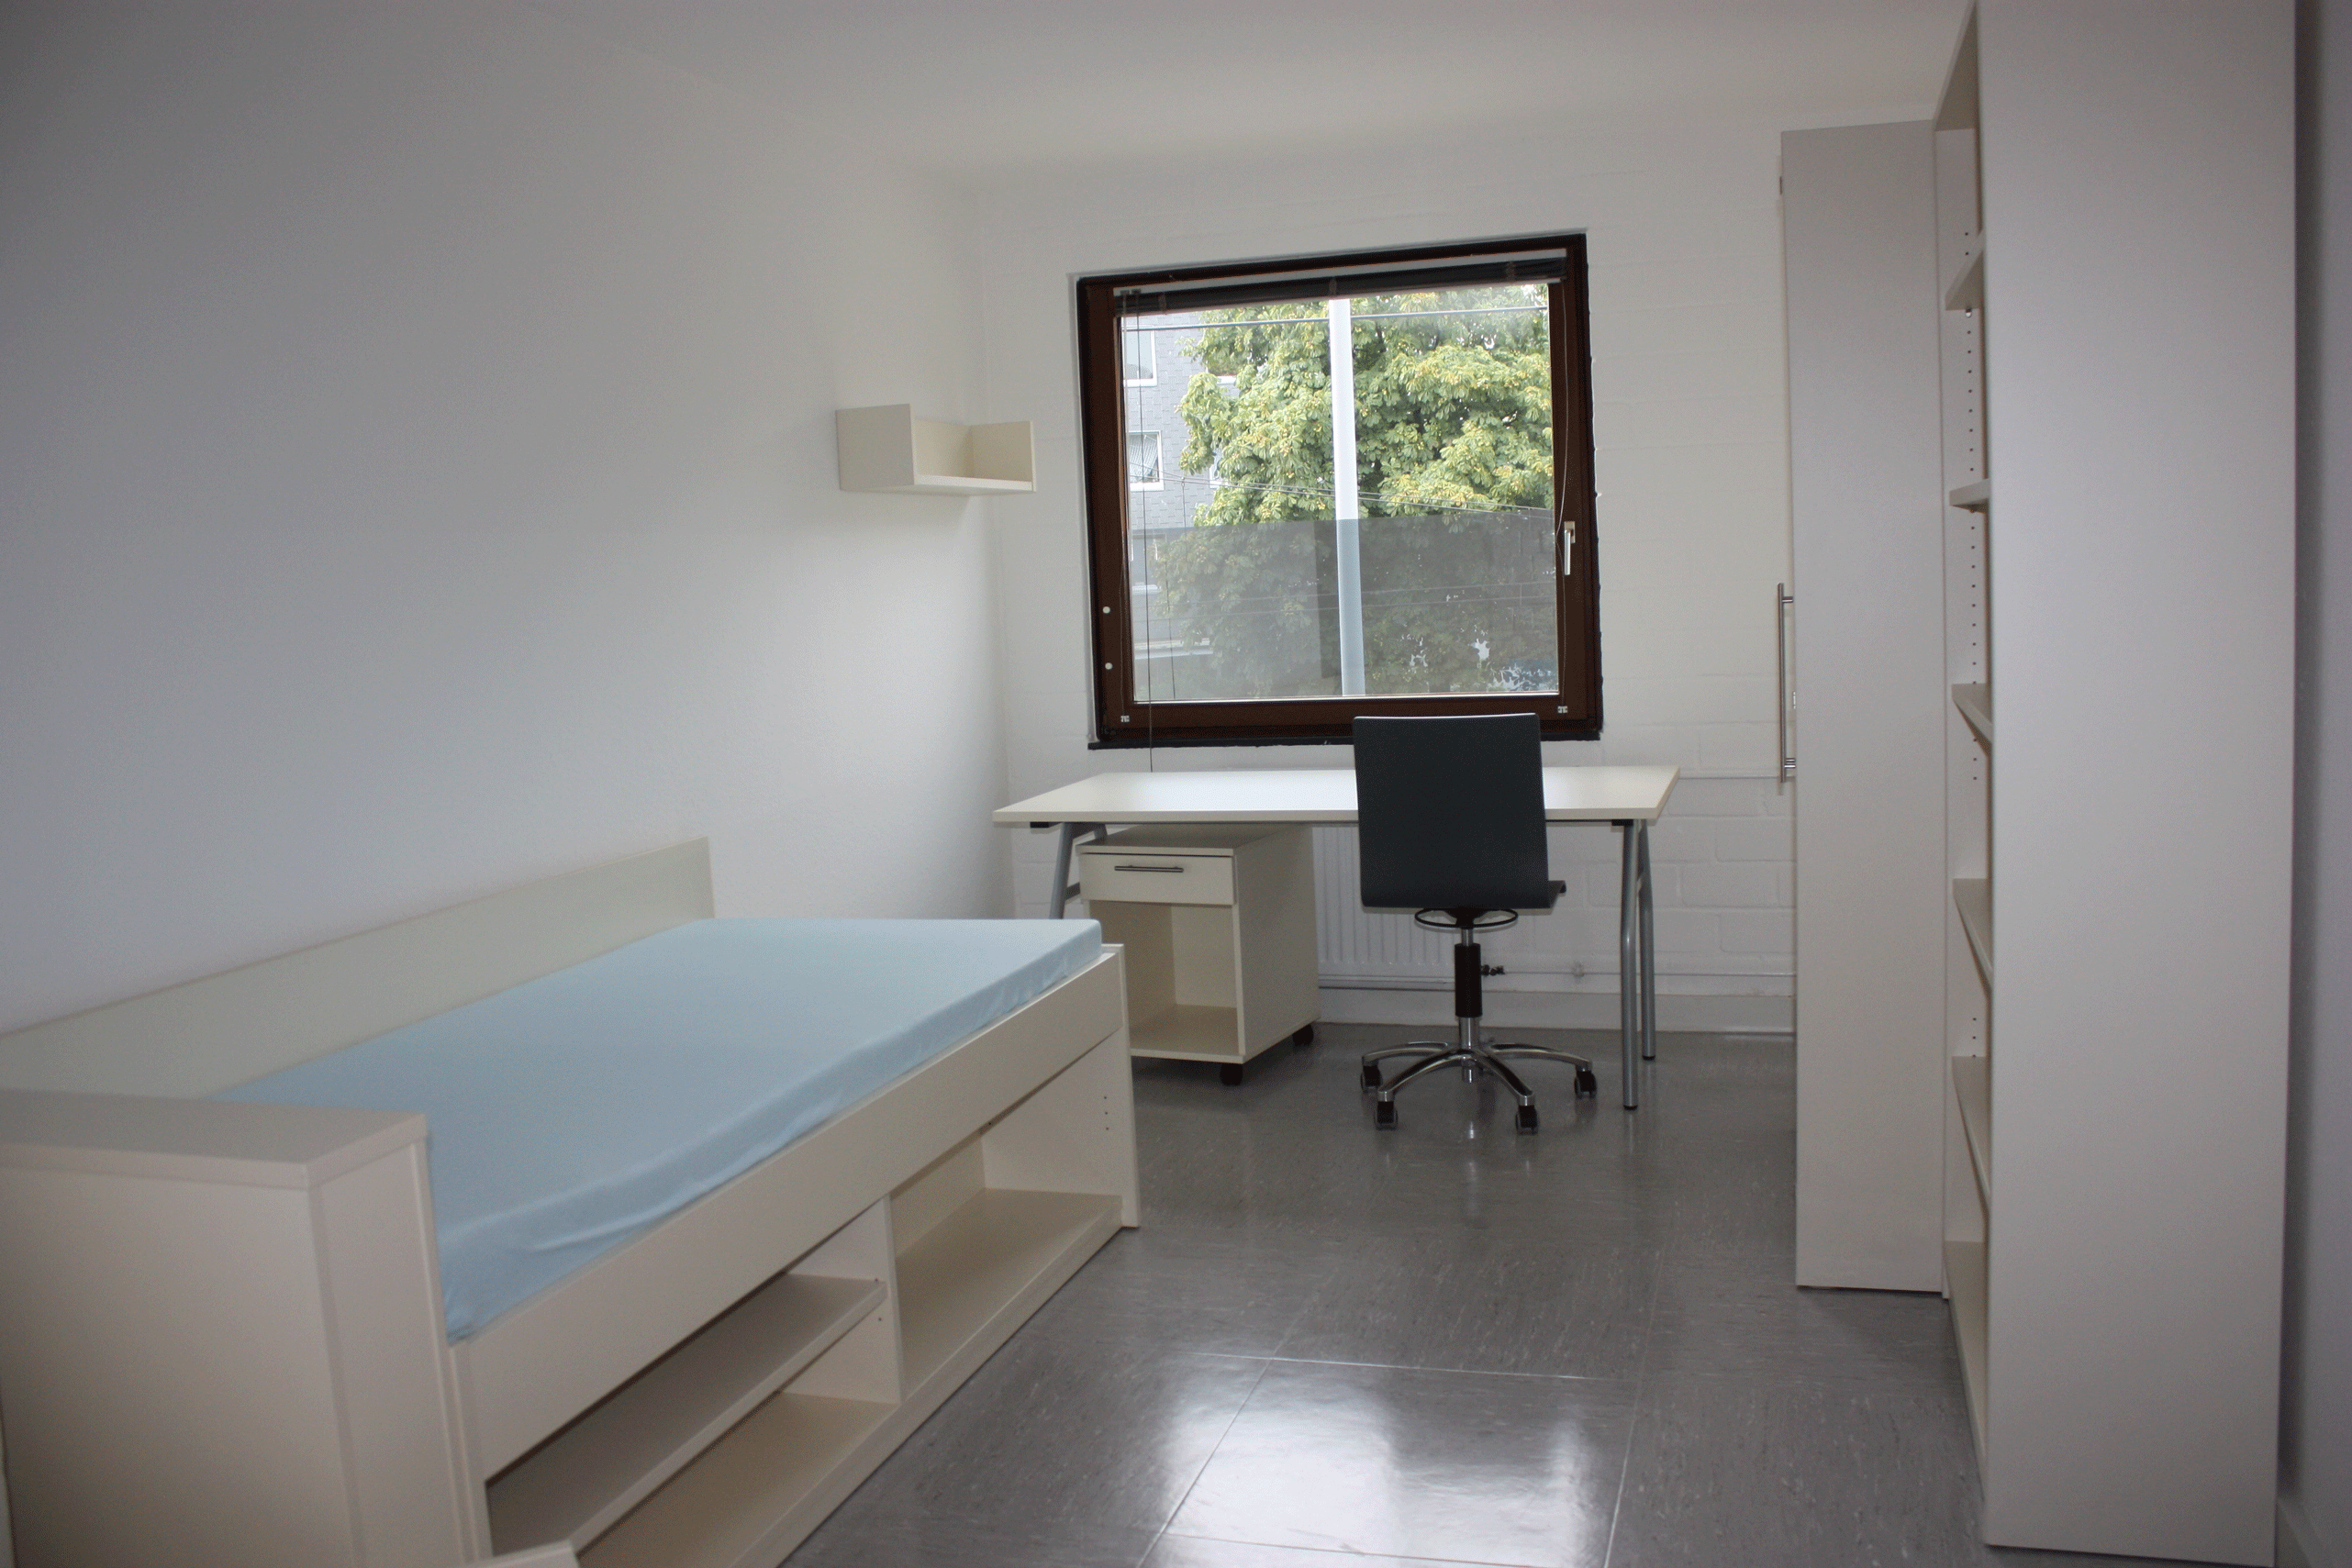 Innenansicht eines Zimmers in der Duisburger Strasse 426 